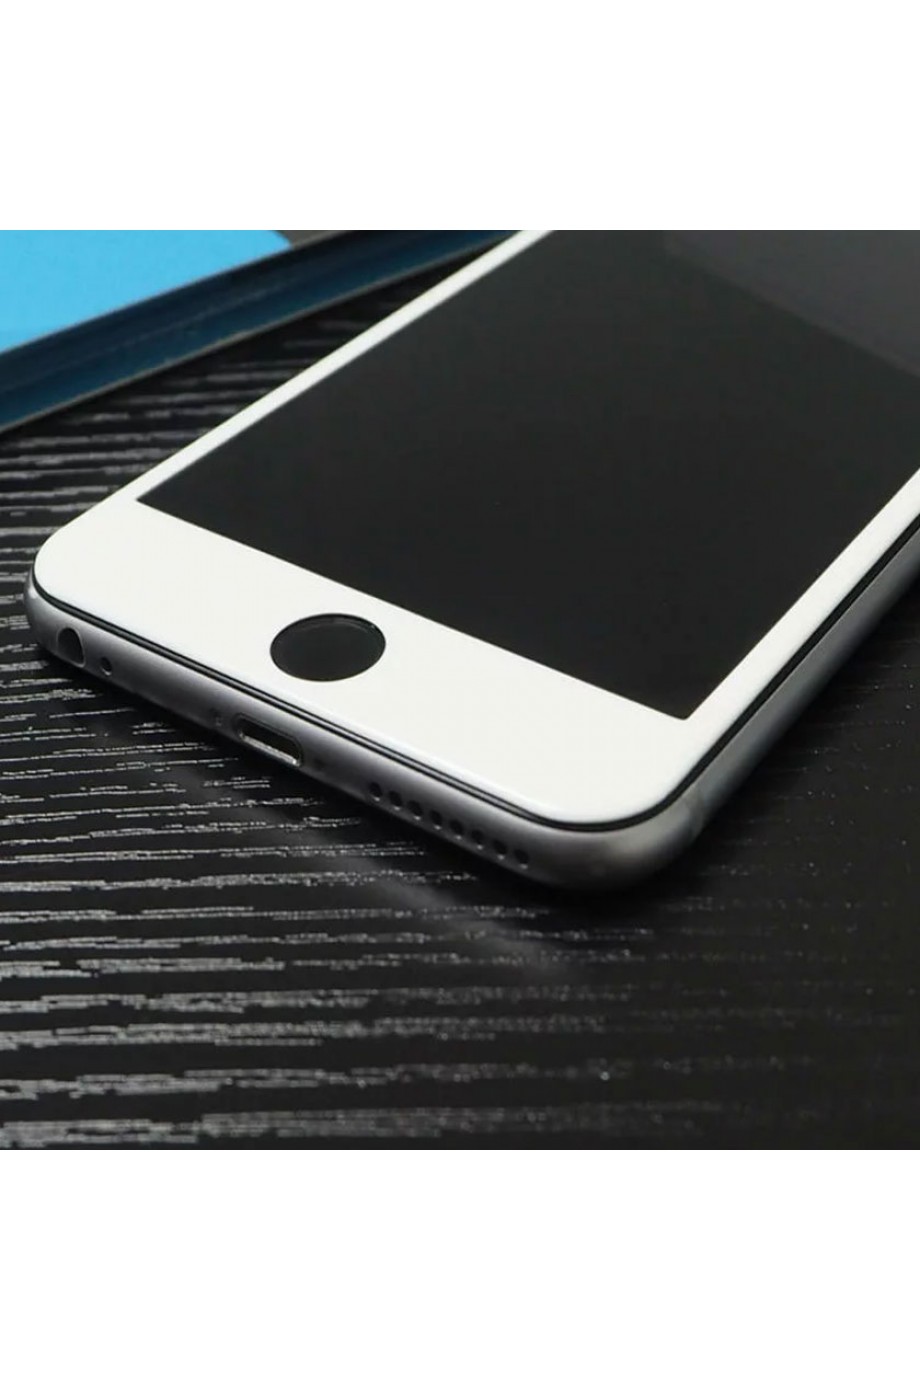 Защитное стекло 5D Mikomo для iPhone 6, белая рамка, полный клей